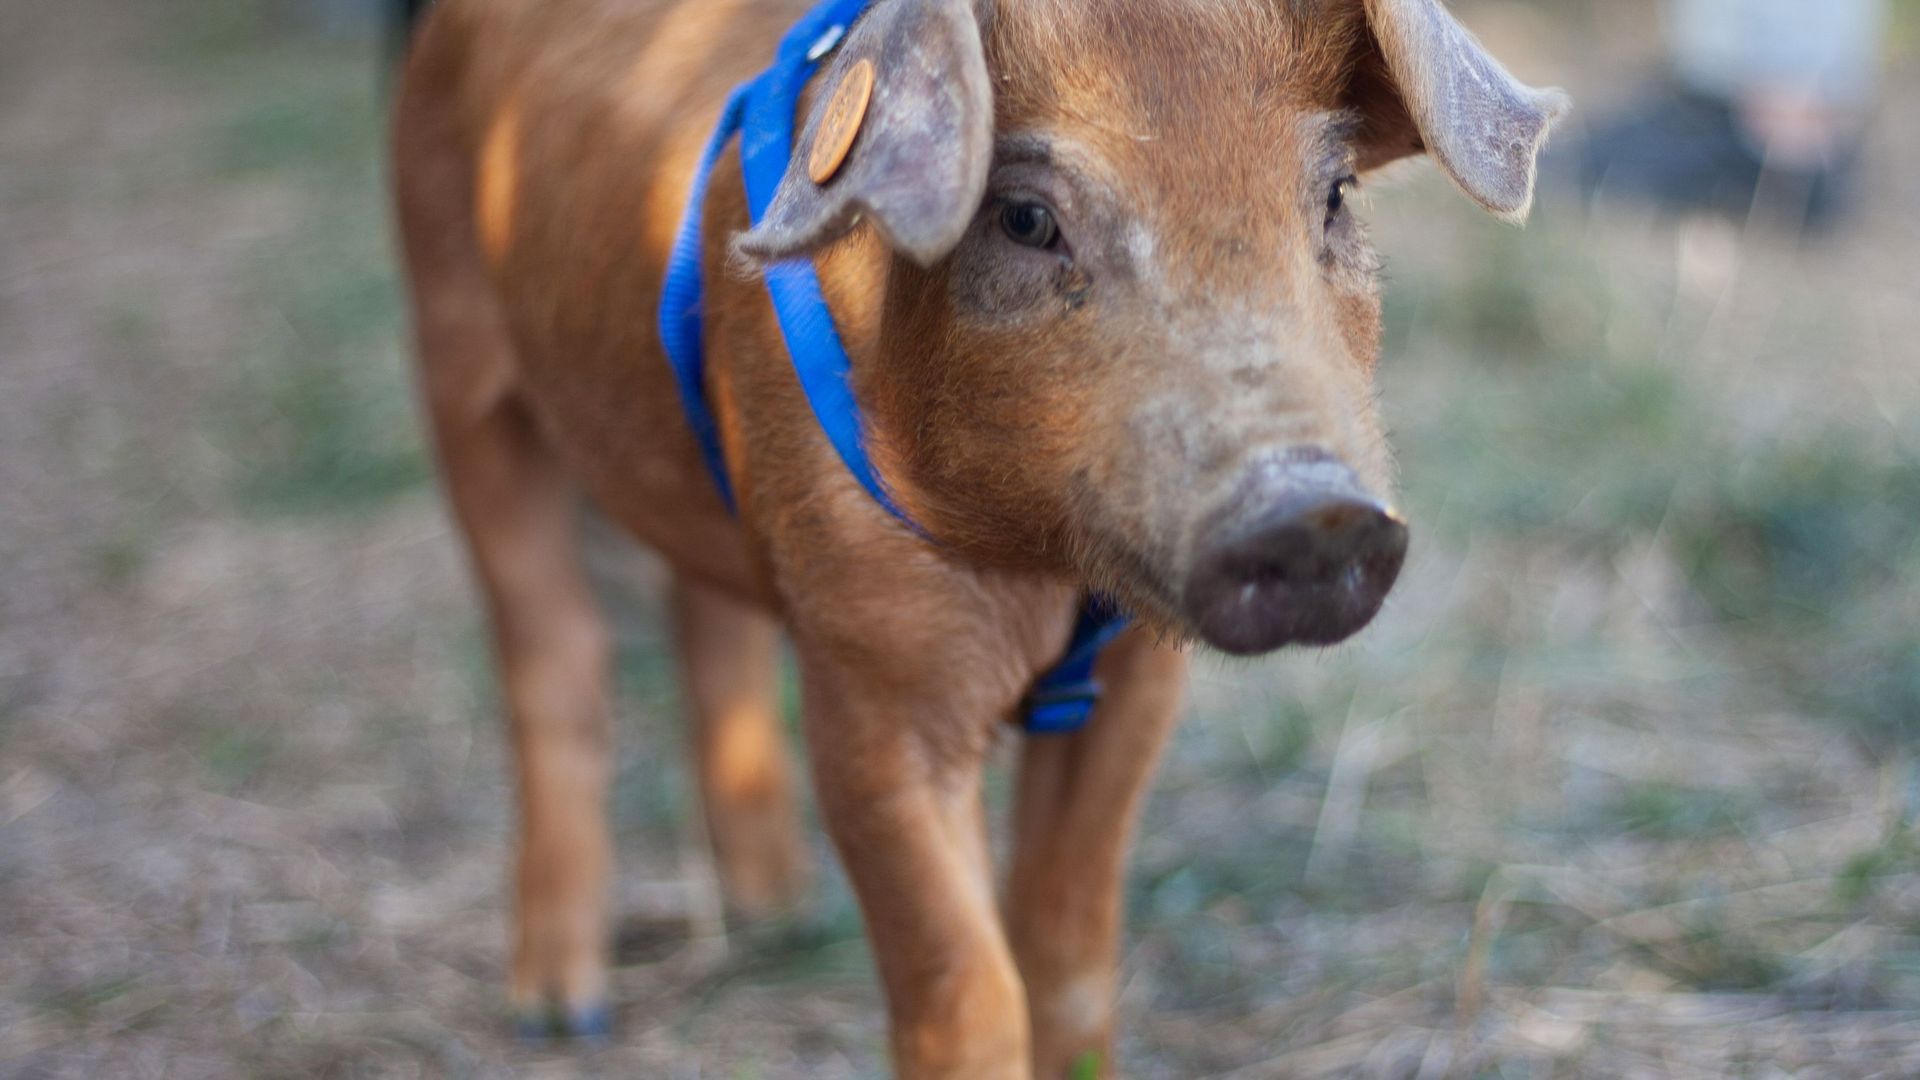 Barback, le petit cochon rescapé par une influenceuse, a rejoint un sanctuaire pour animaux 